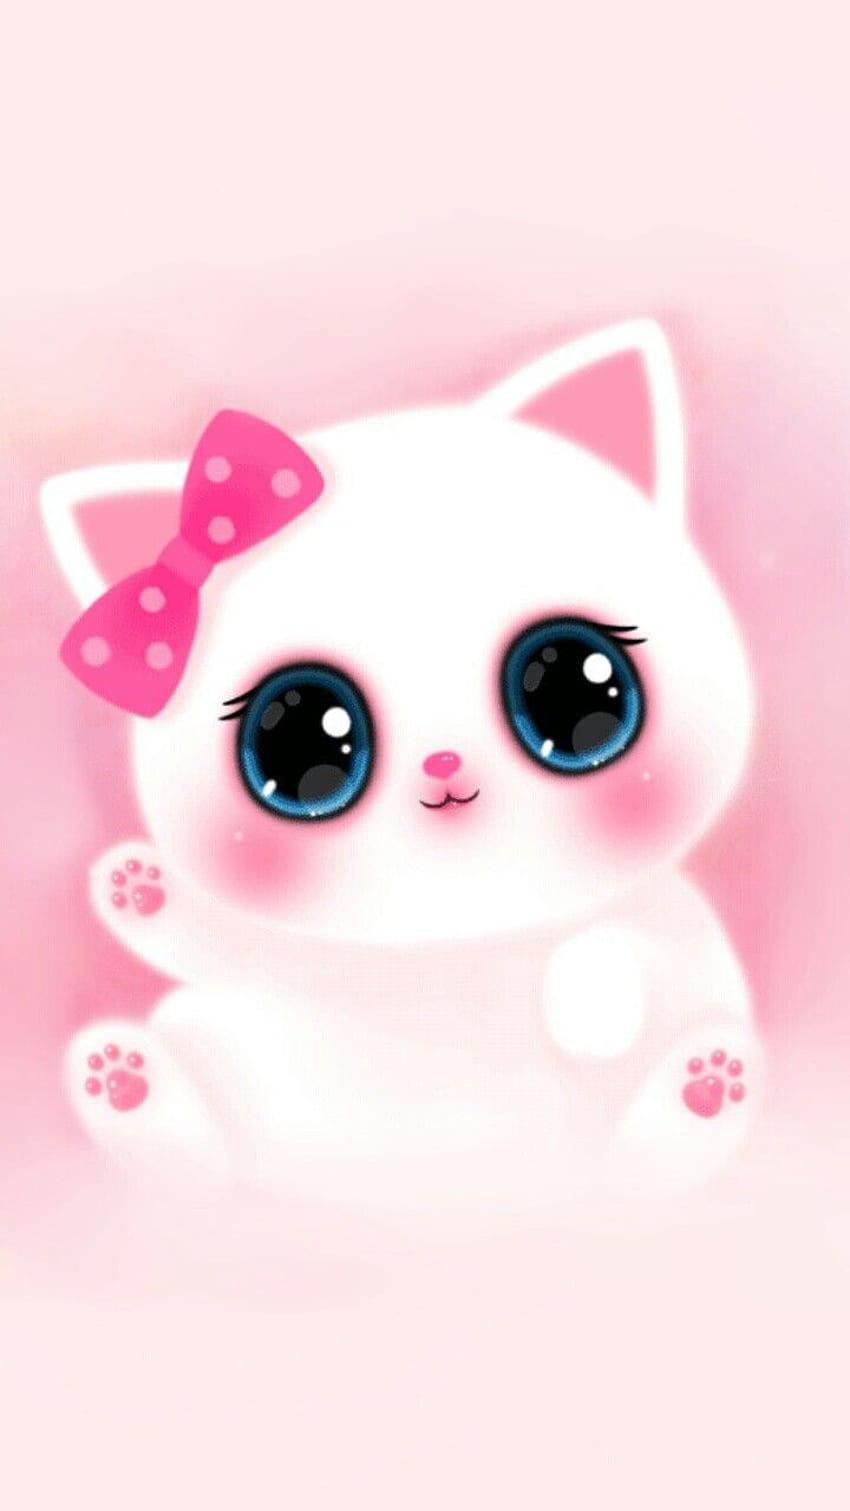 Anime Girl Cat Girl Illustration Cute Stock Illustration 1489723616   Shutterstock